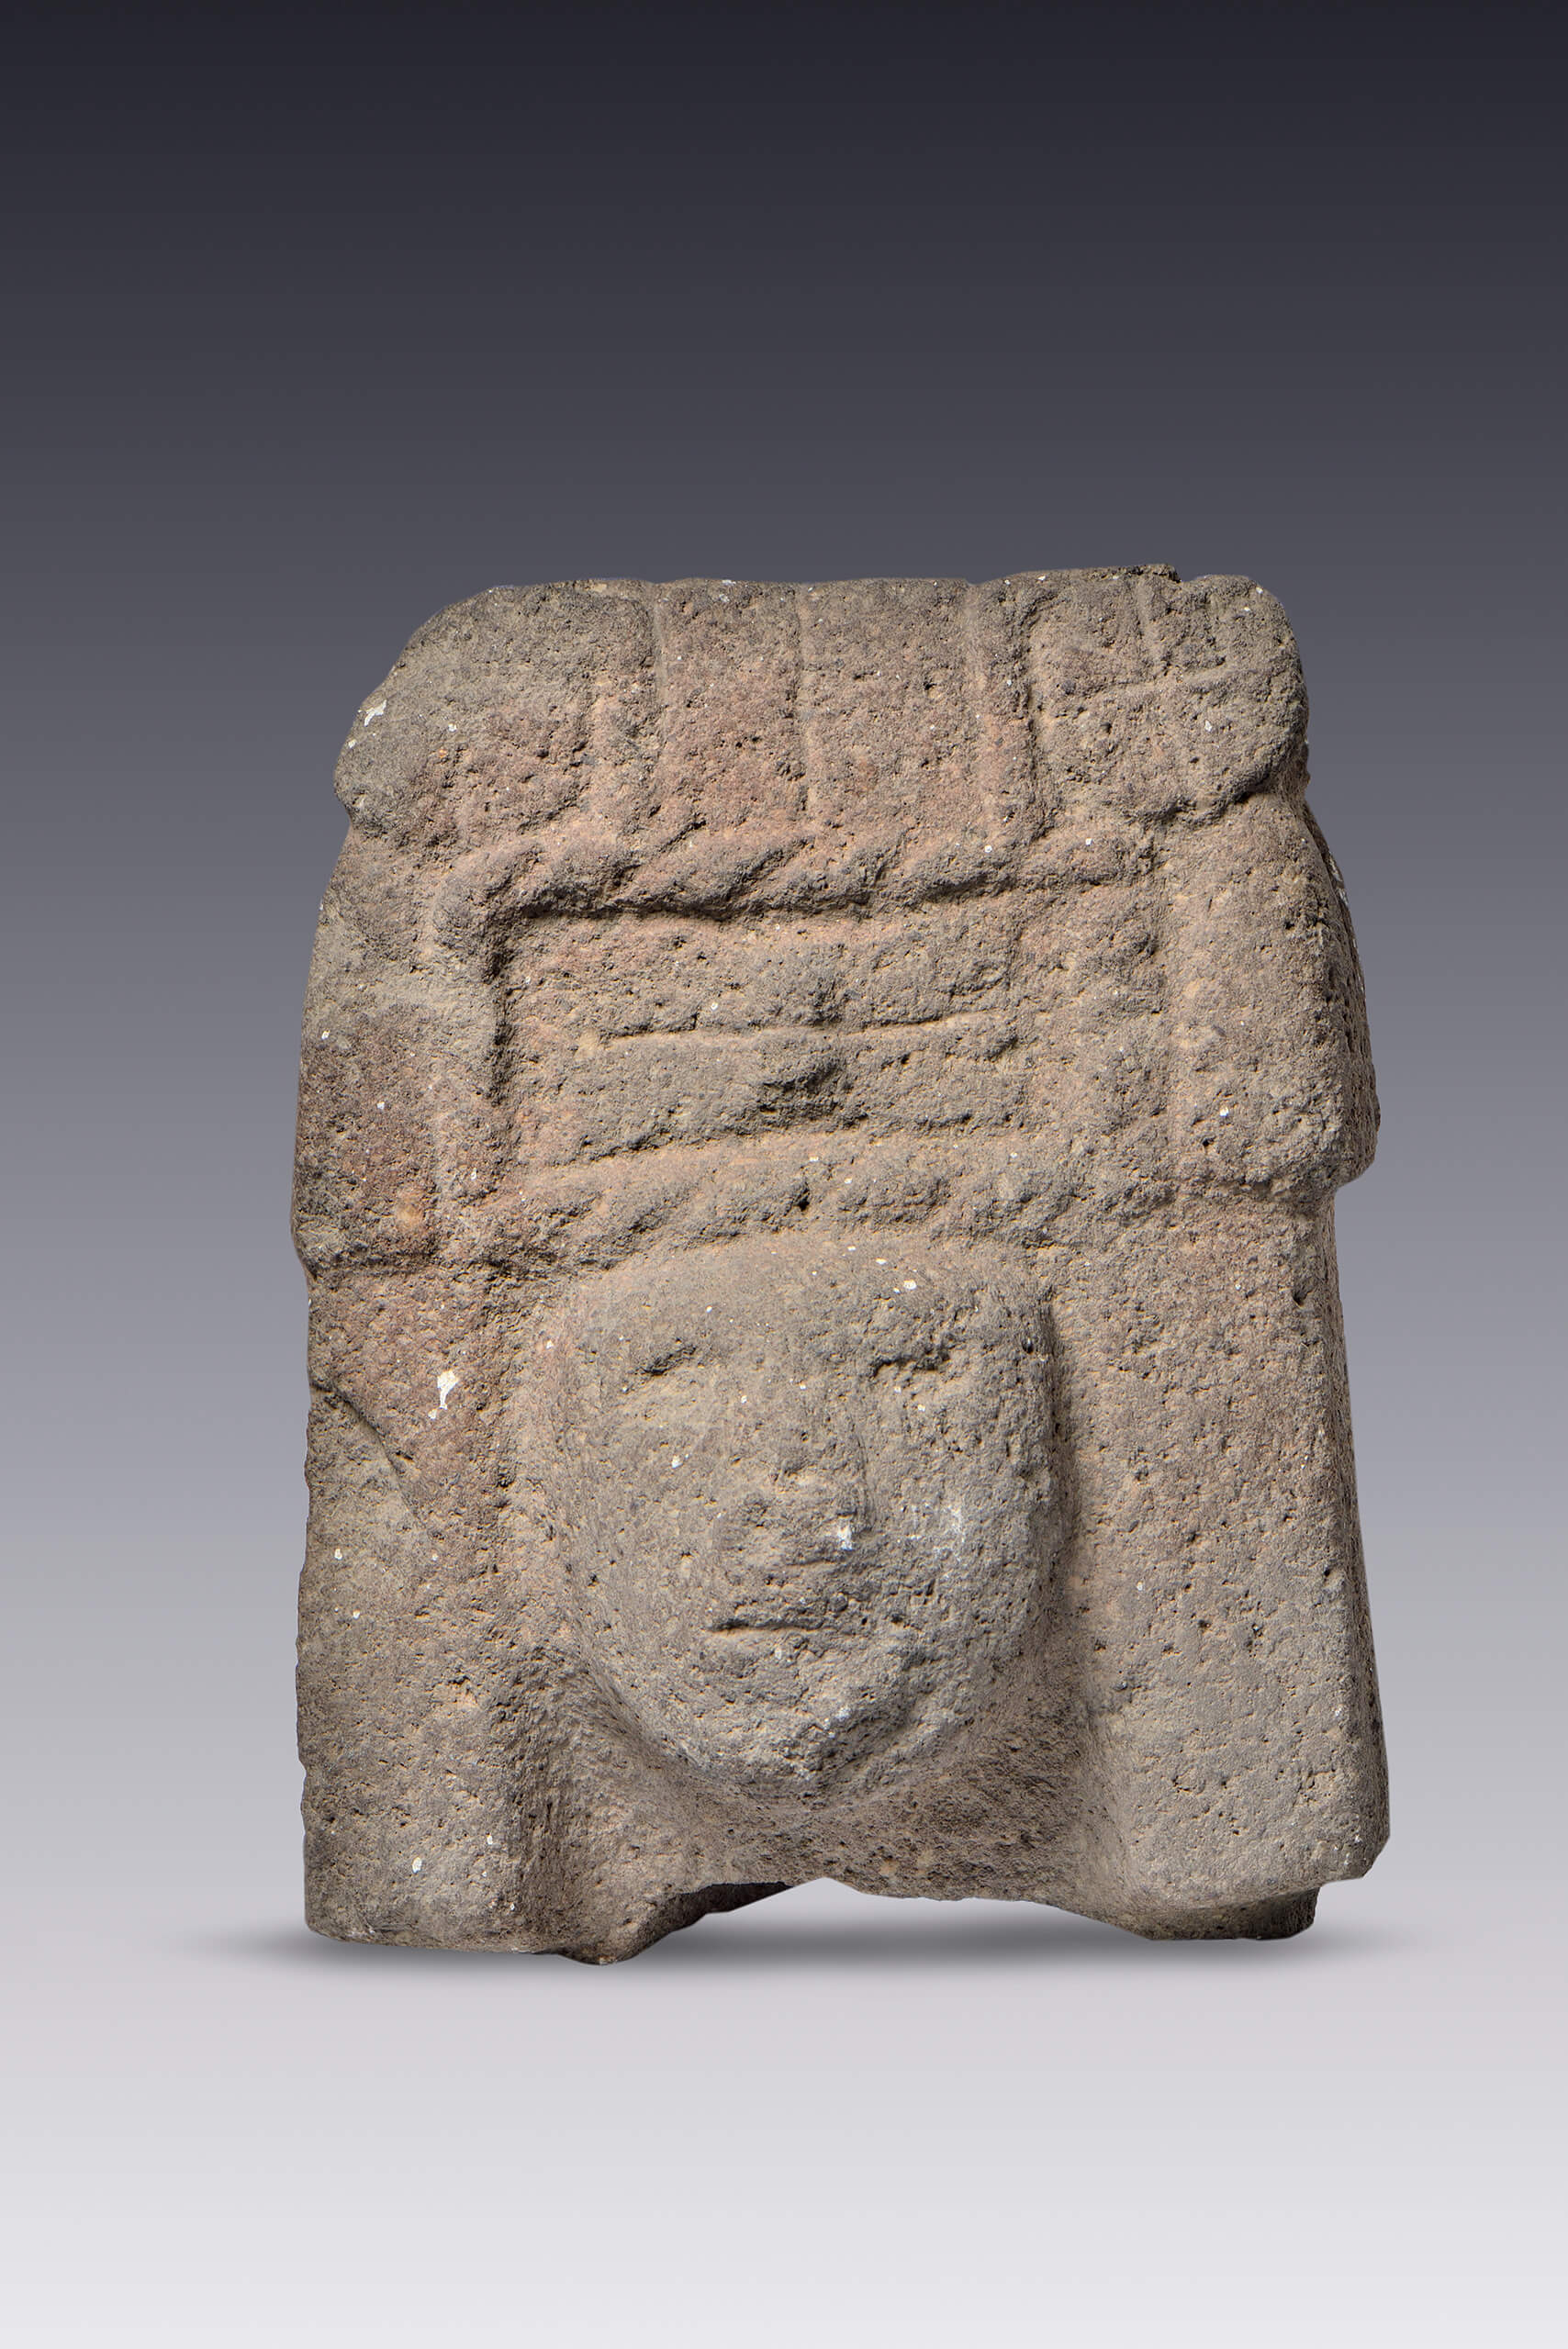 Cabeza de Chicomecoatl | El México antiguo. Salas de Arte Prehispánico | Museo Amparo, Puebla